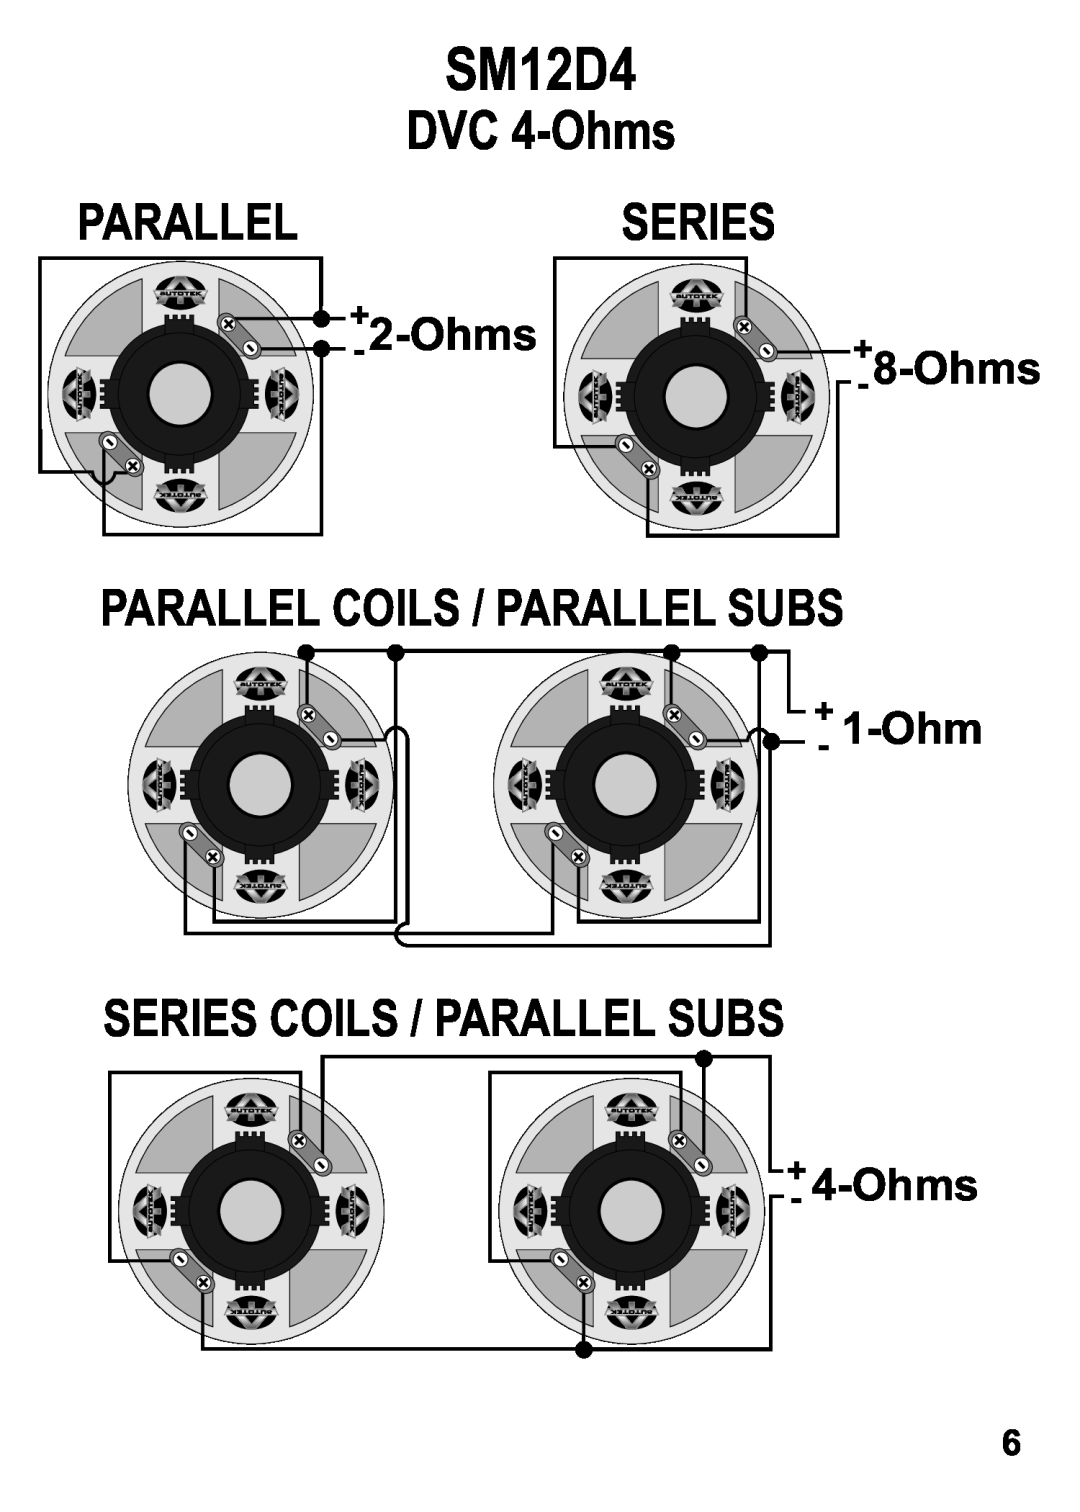 AutoTek SM12S4 SM12D4, DVC 4-Ohms, +- 8-Ohms, 1-Ohm, +- 2-Ohms, Parallel Coils / Parallel Subs, Series, +- 4-Ohms 